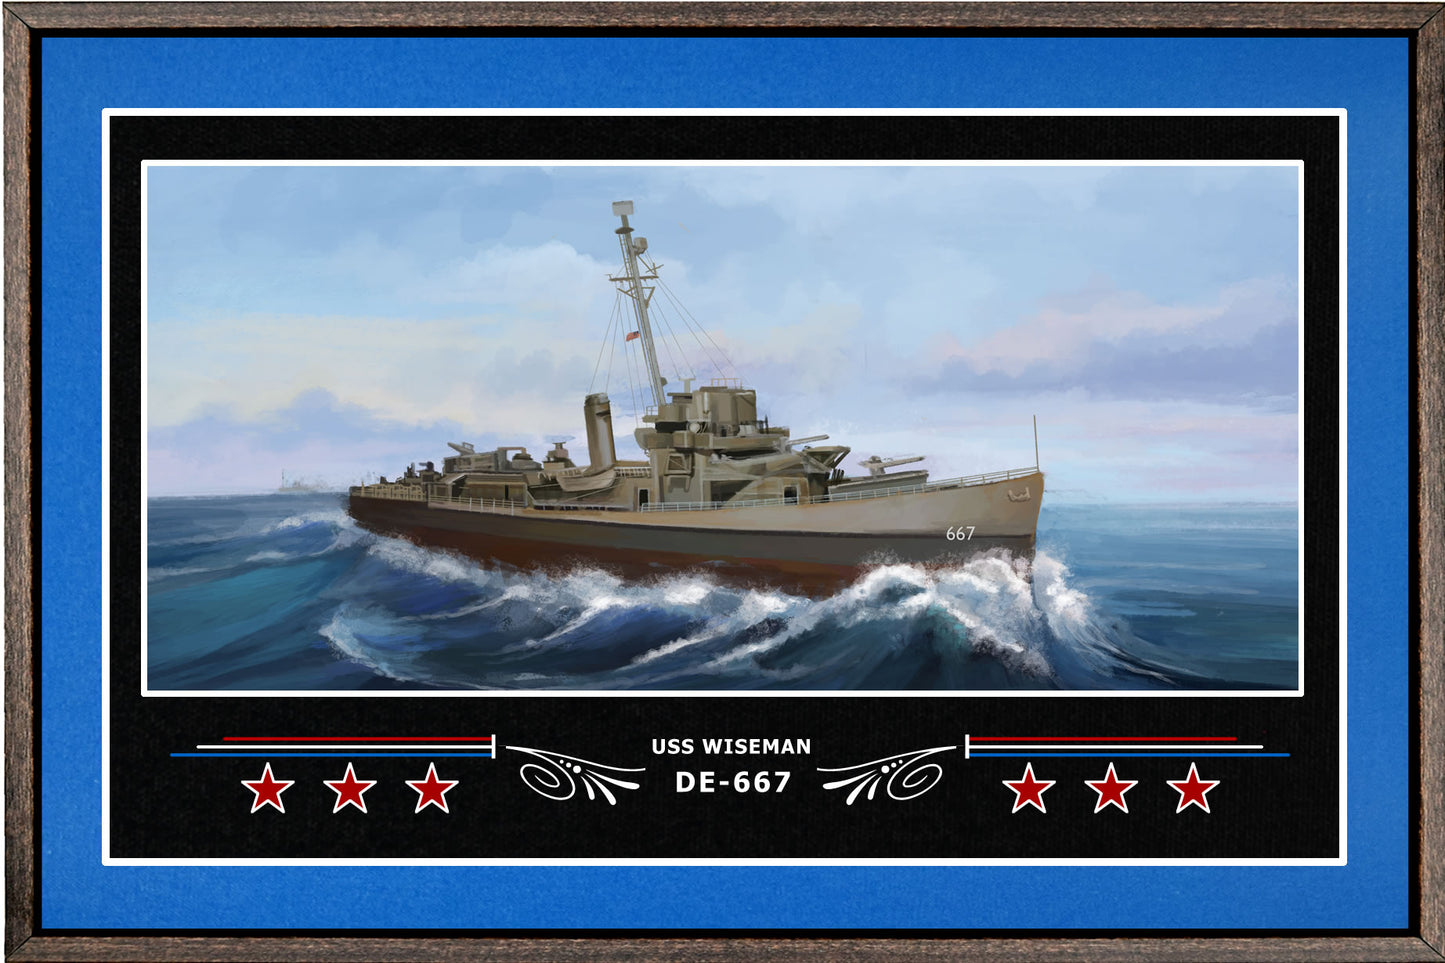 USS WISEMAN DE 667 BOX FRAMED CANVAS ART BLUE